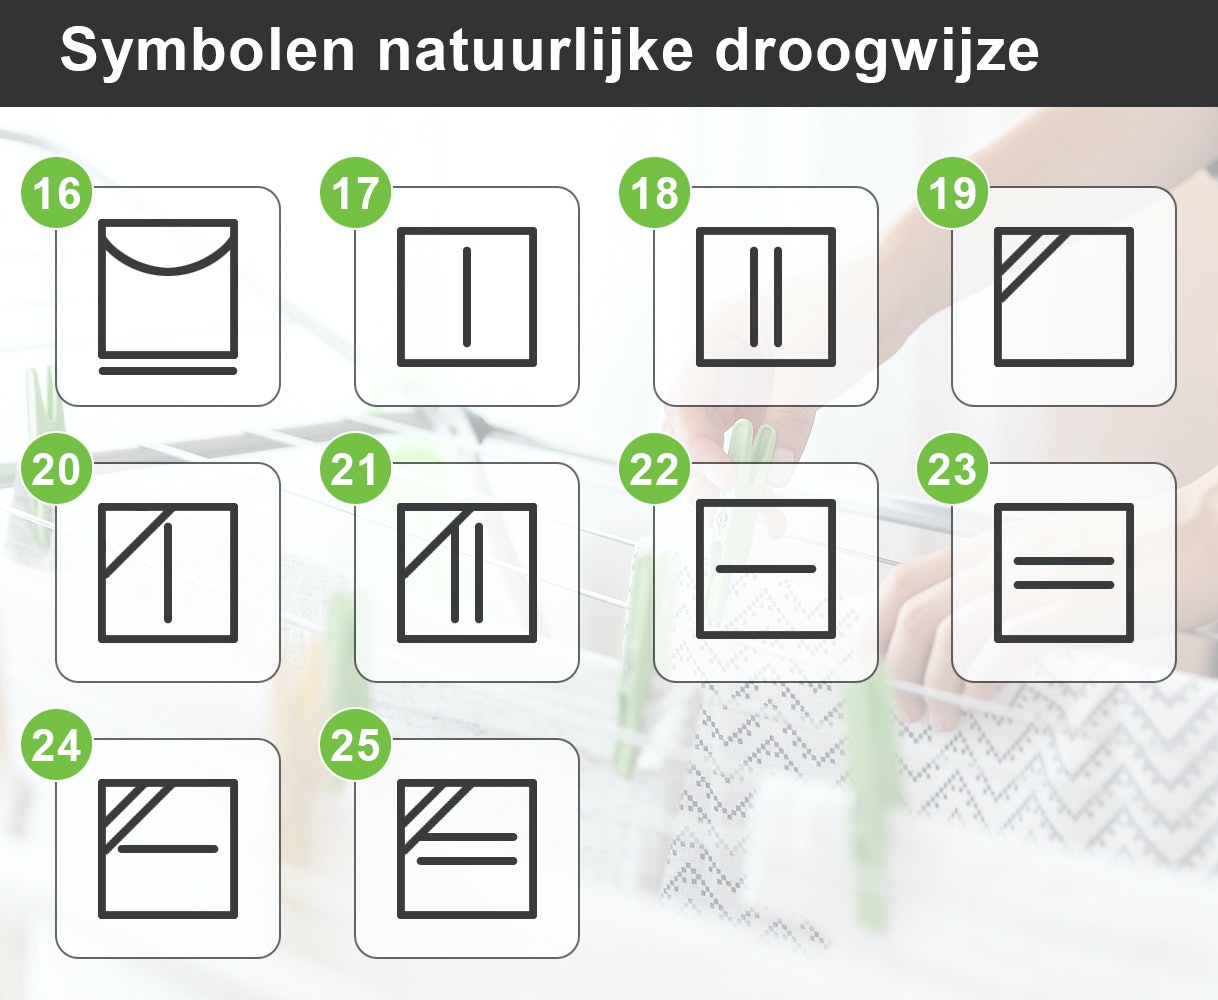 Symbolen voor een natuurlijke droogwijze.